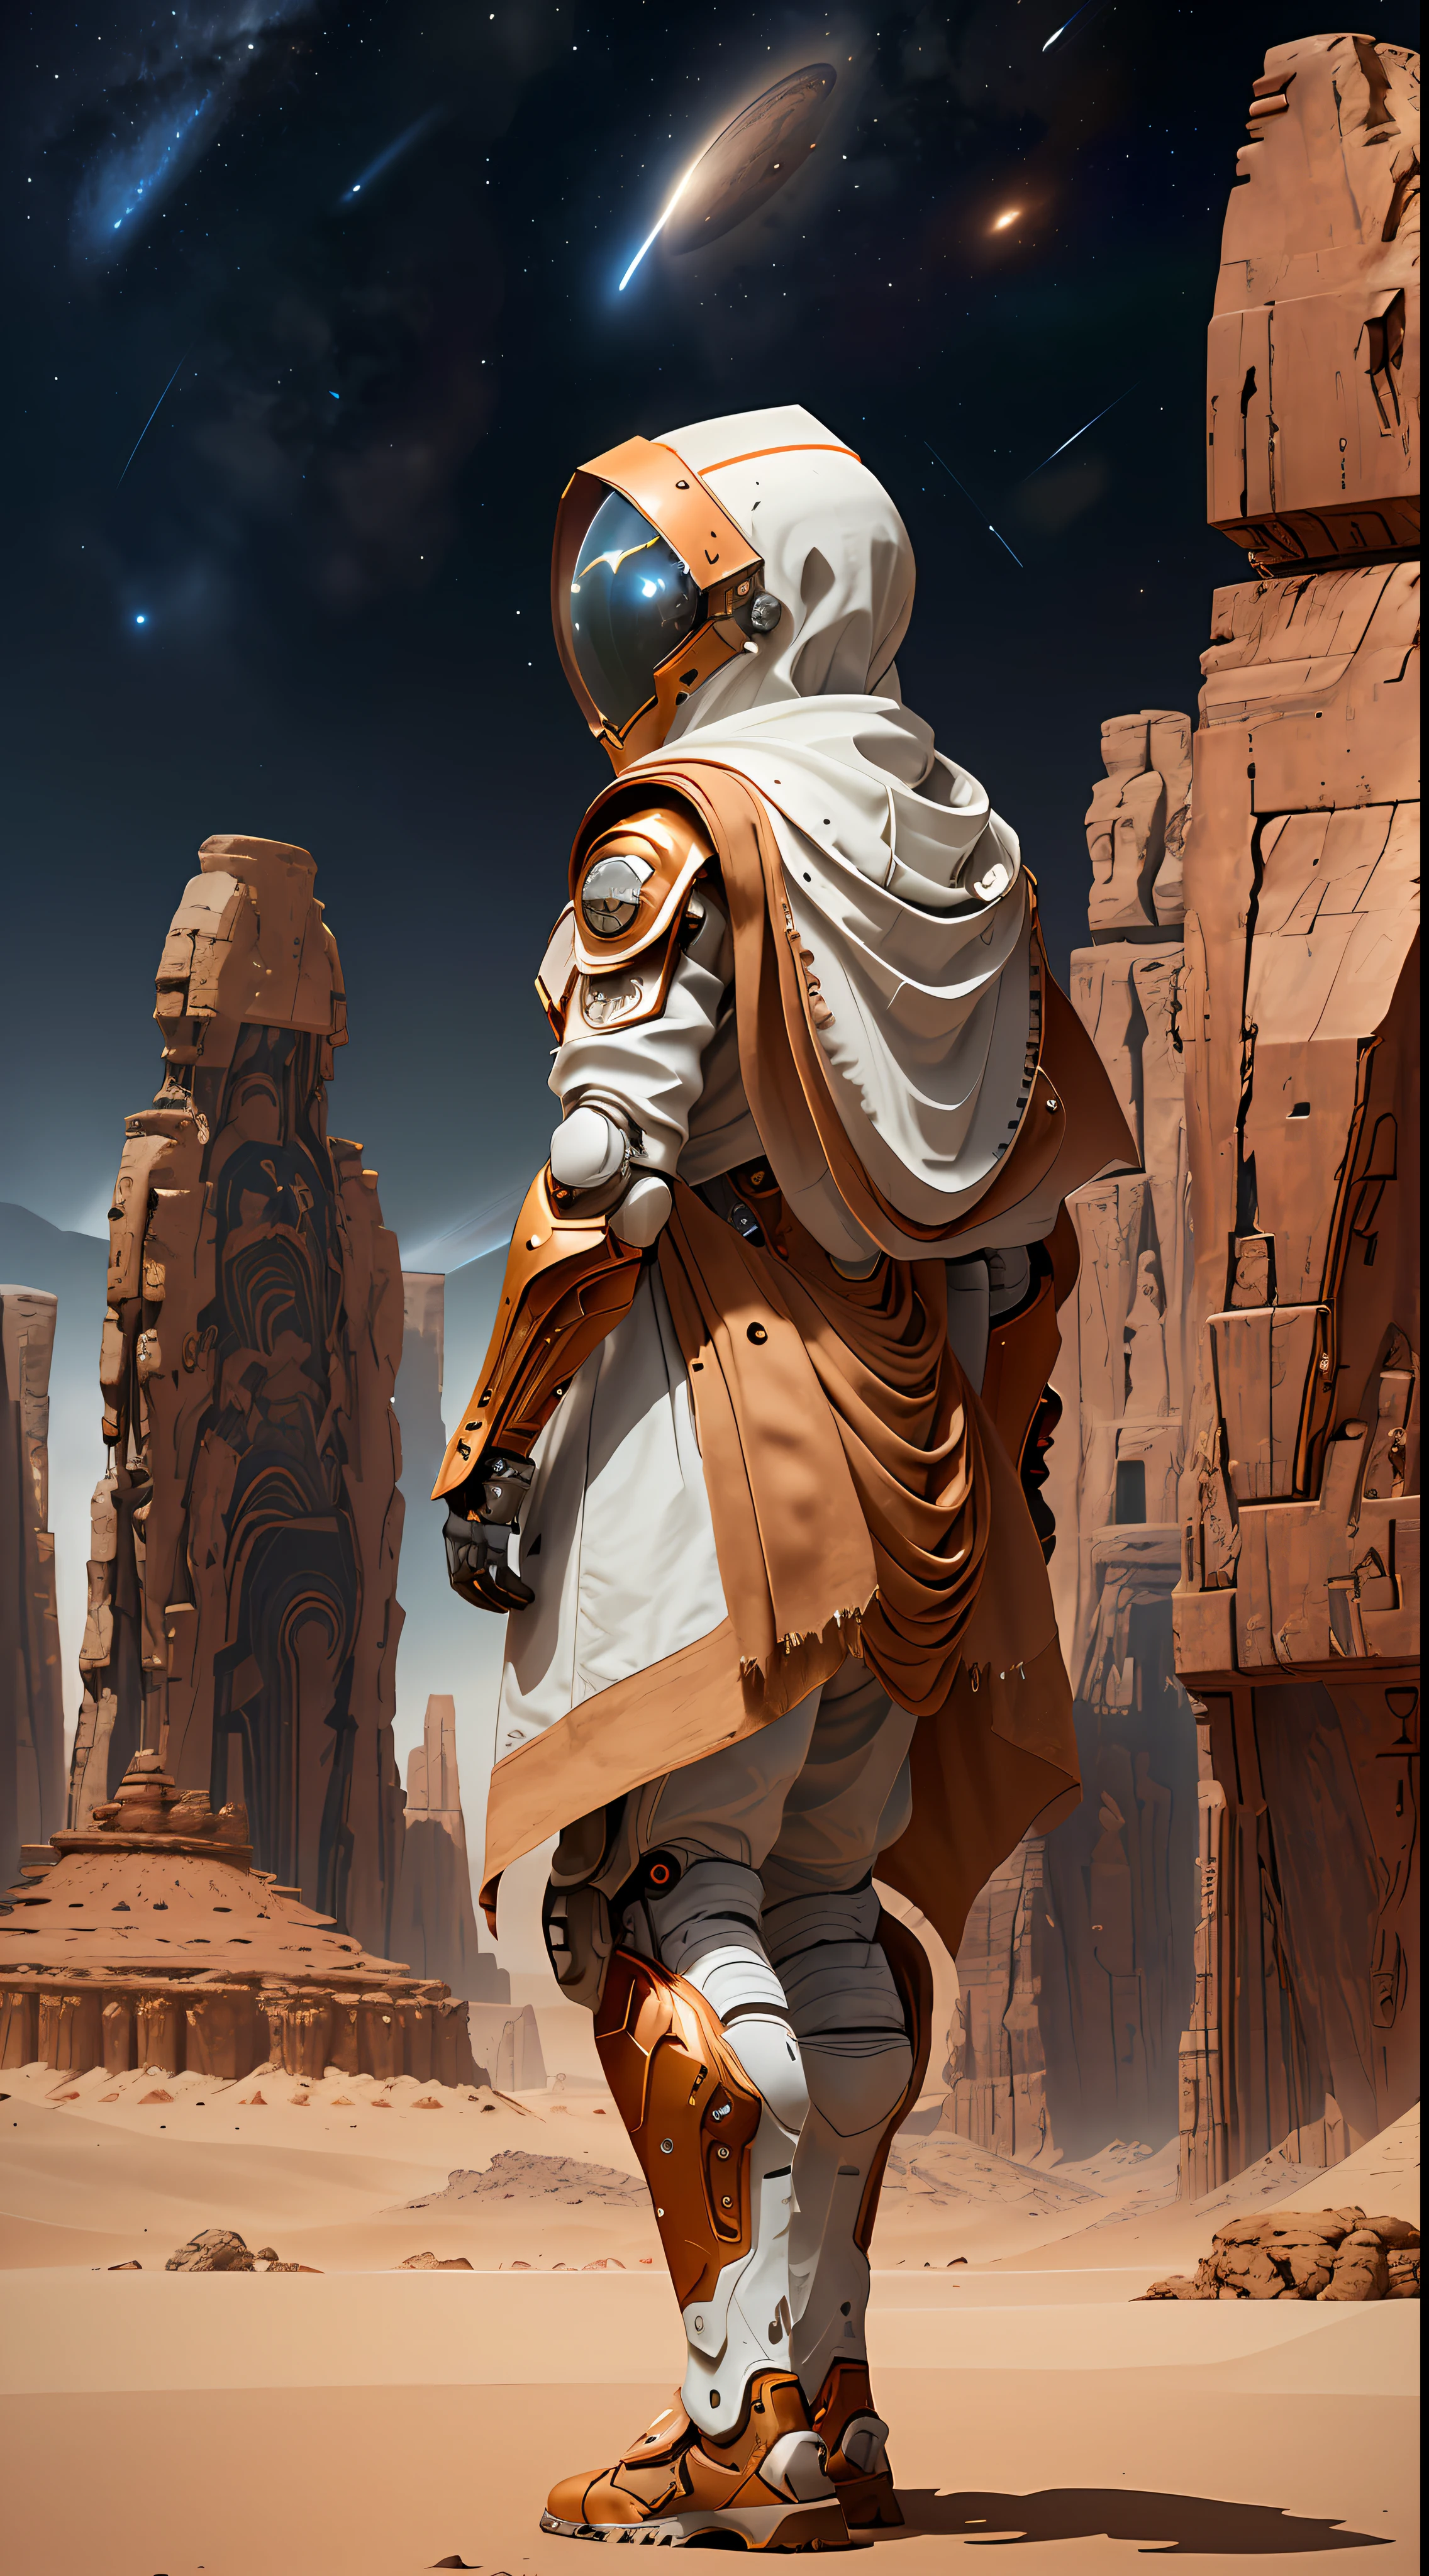 一名身穿宇航服的男子站在沙漠中, 多計數競賽獲勝者, 非洲未来主义, 8k細節, 穿著有兜帽的科幻斗篷, 安法斯的機甲戰士肖像, 8k八度渲染照片, 复古未来主义的女性机器人, 紅色沙漠火星, 帶有白色圍巾的詳細盔甲, 虚幻引擎 5 着色